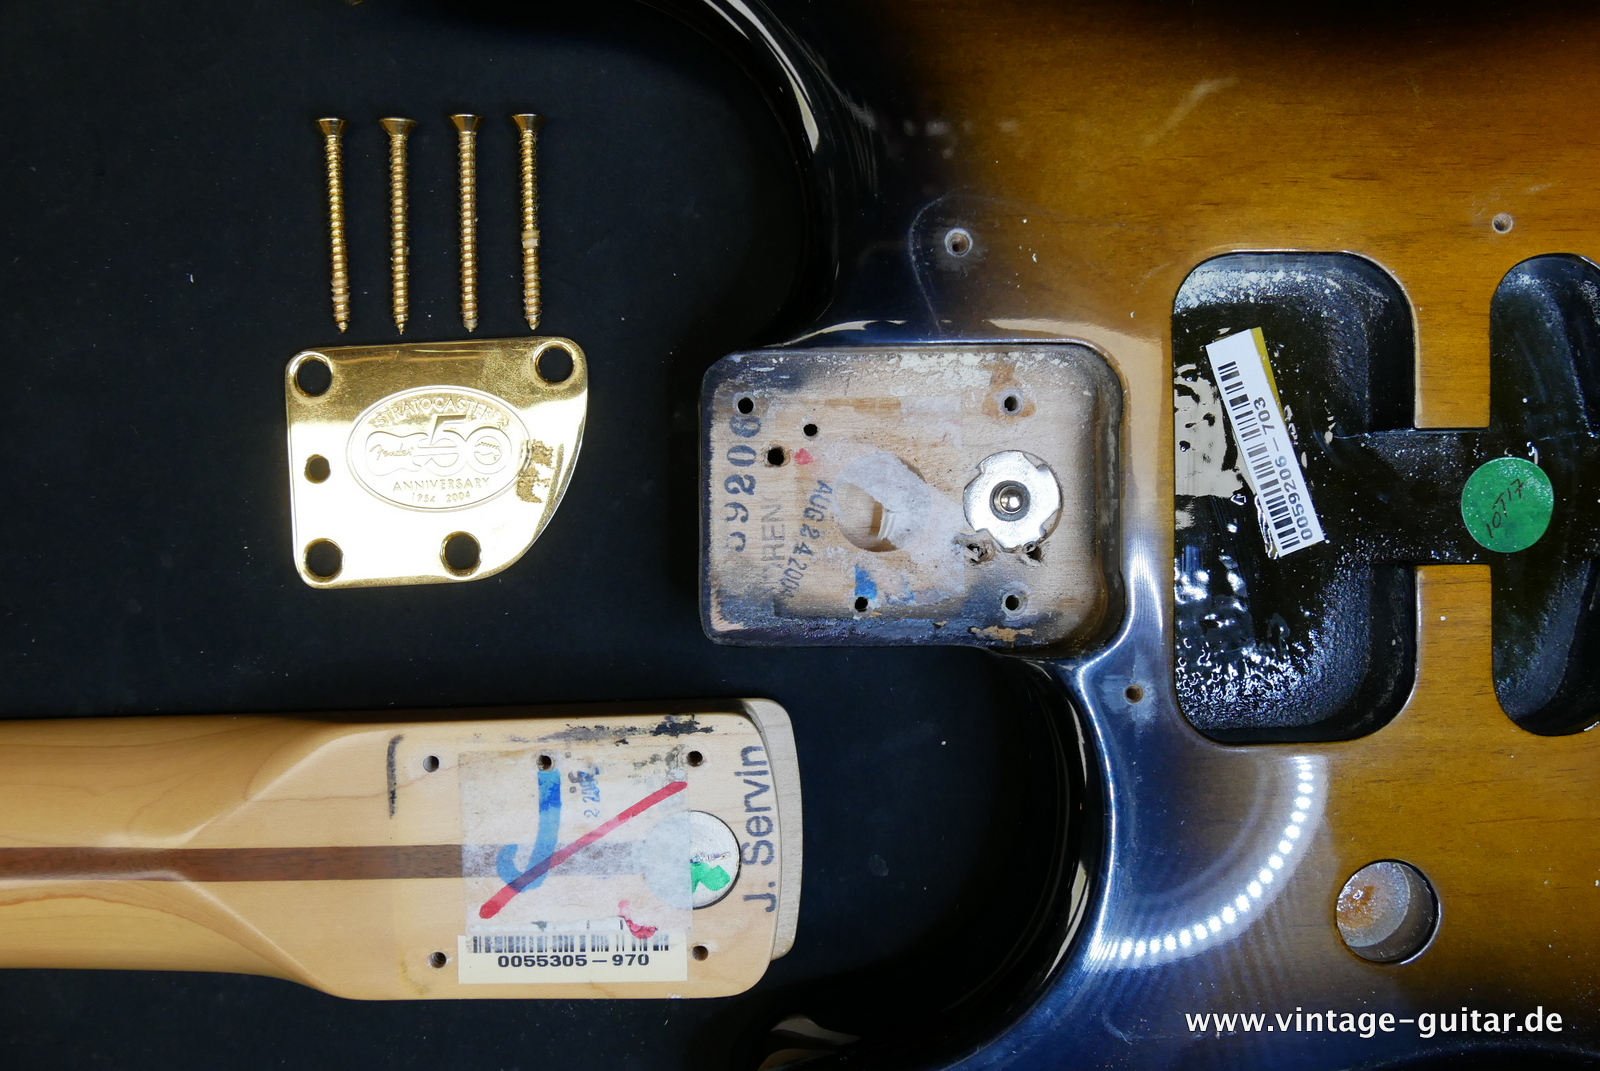 Fender_Stratocaster_deluxe_50th_anniversary__left_hand_sunburst_tweed_case_2004-013.JPG